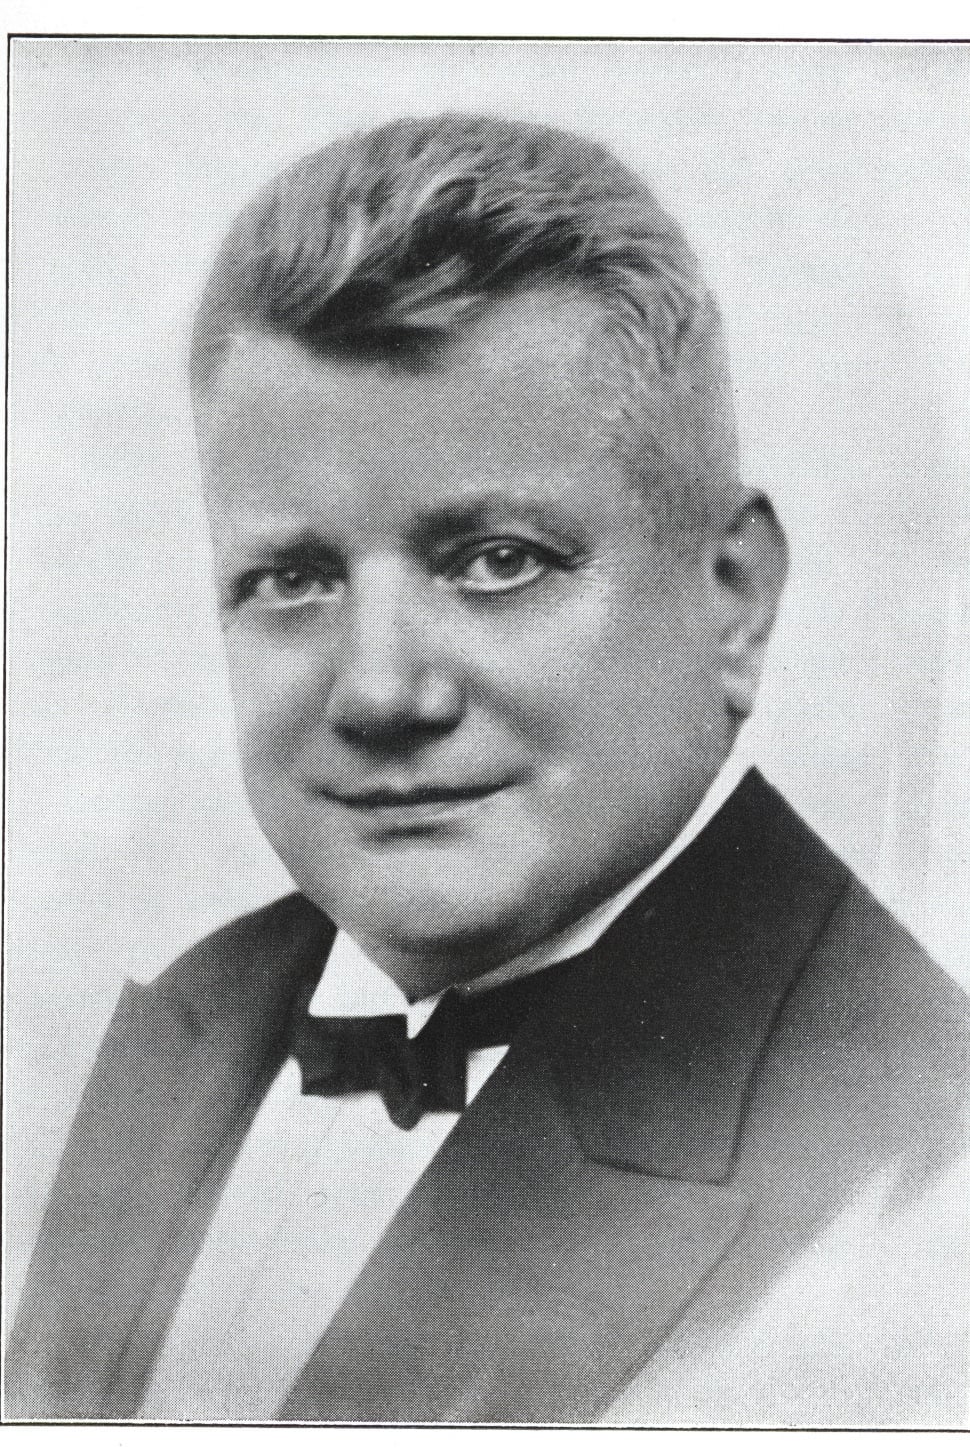 Otto Reutter